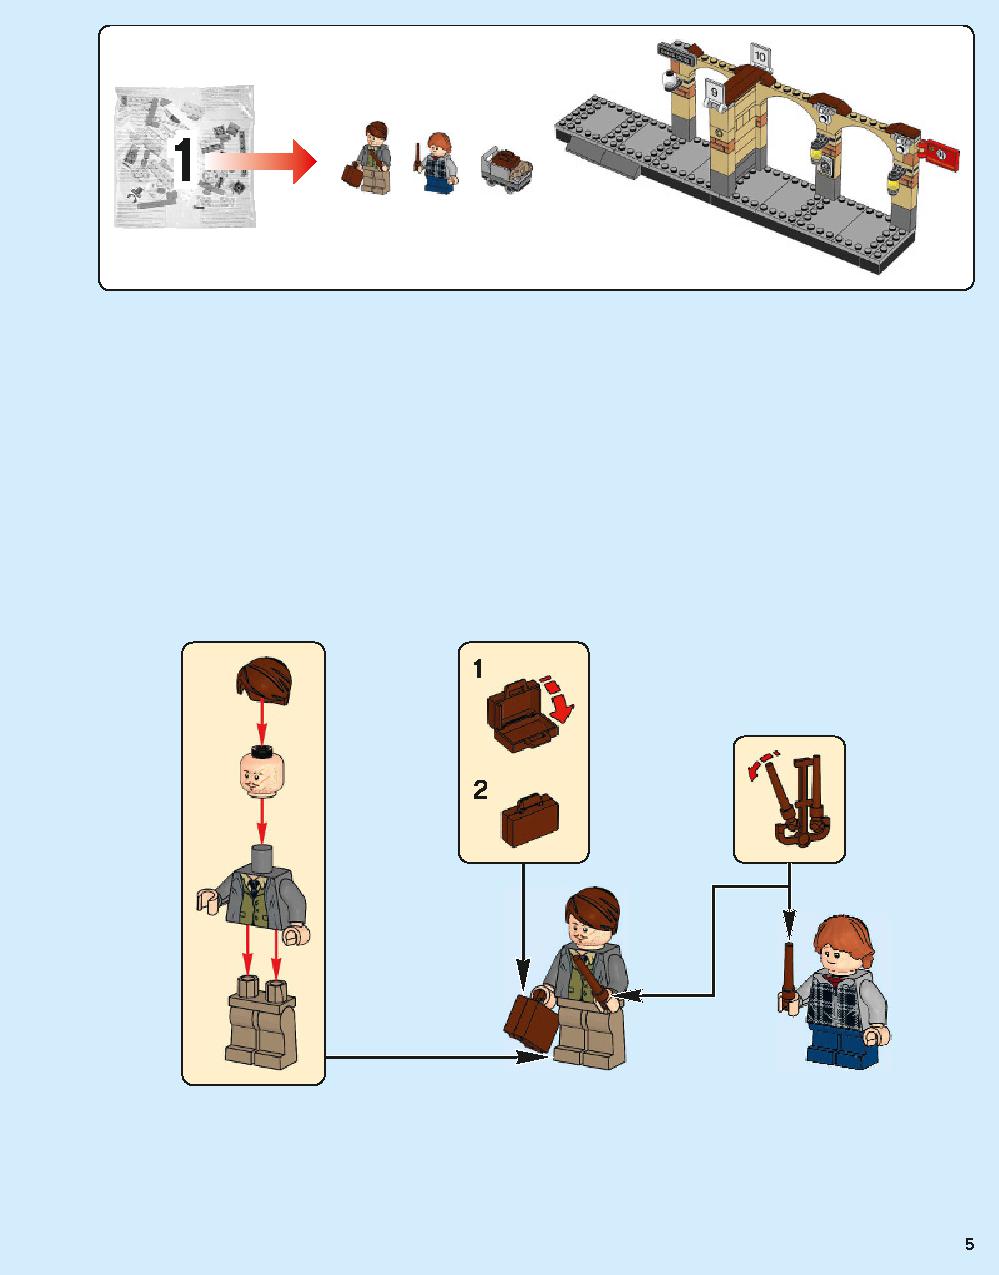 Hogwarts Express 75955 LEGO information LEGO instructions 5 page